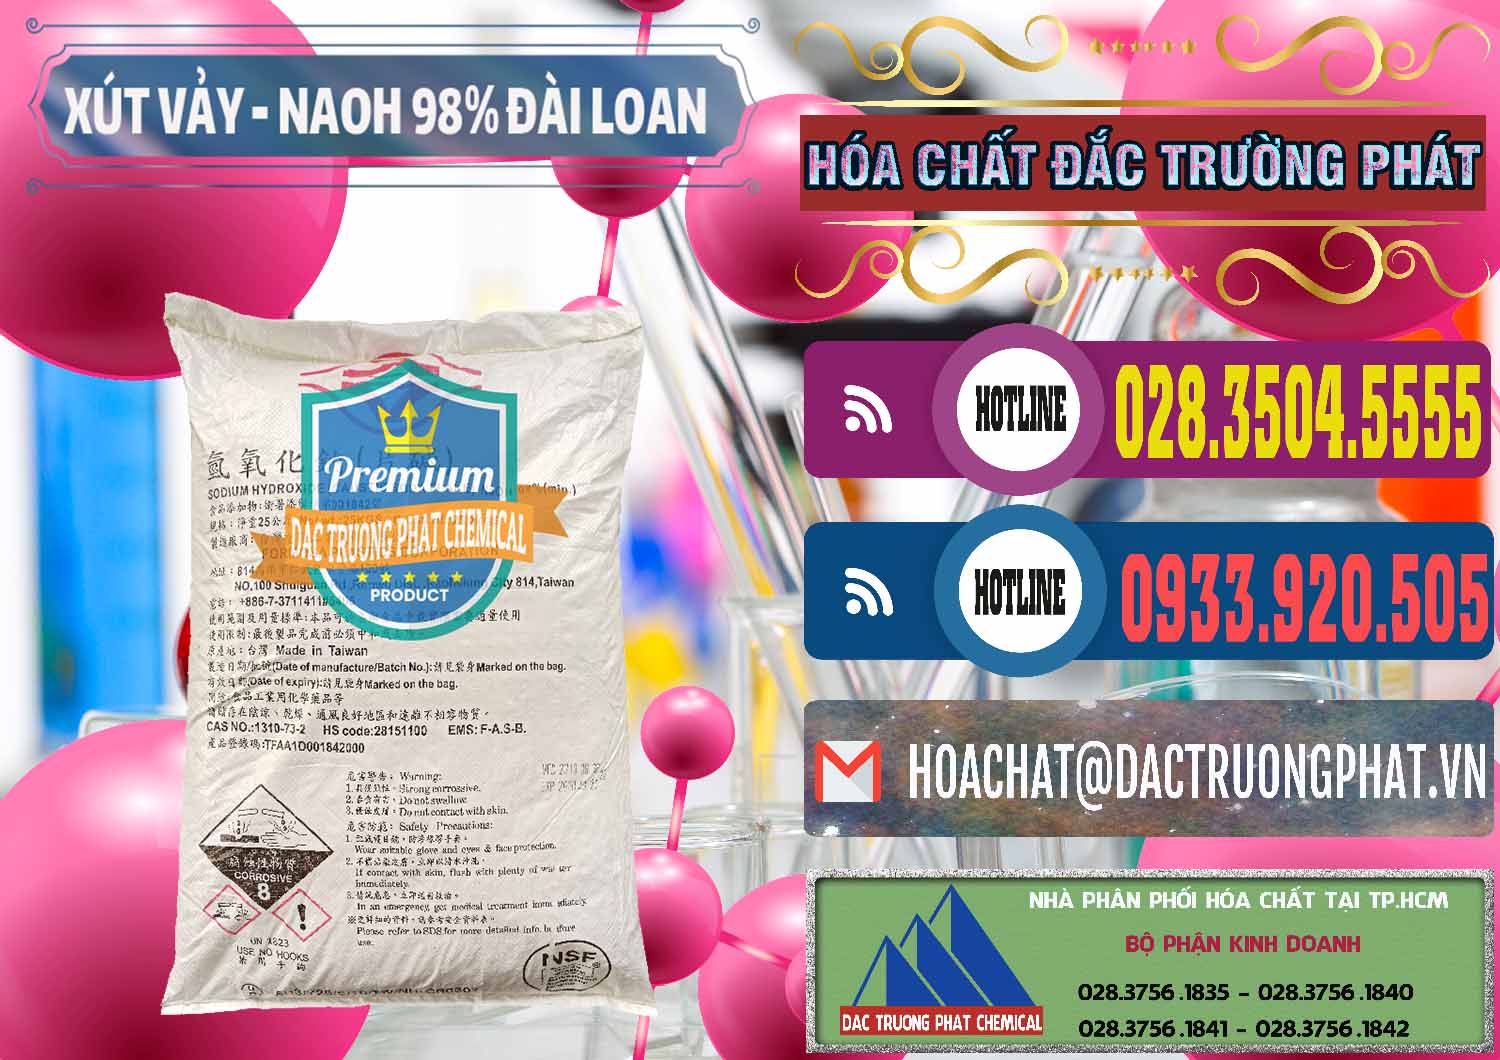 Đơn vị chuyên bán & phân phối Xút Vảy - NaOH Vảy 98% Formosa Đài Loan Taiwan - 0174 - Nhà phân phối và cung cấp hóa chất tại TP.HCM - muabanhoachat.com.vn